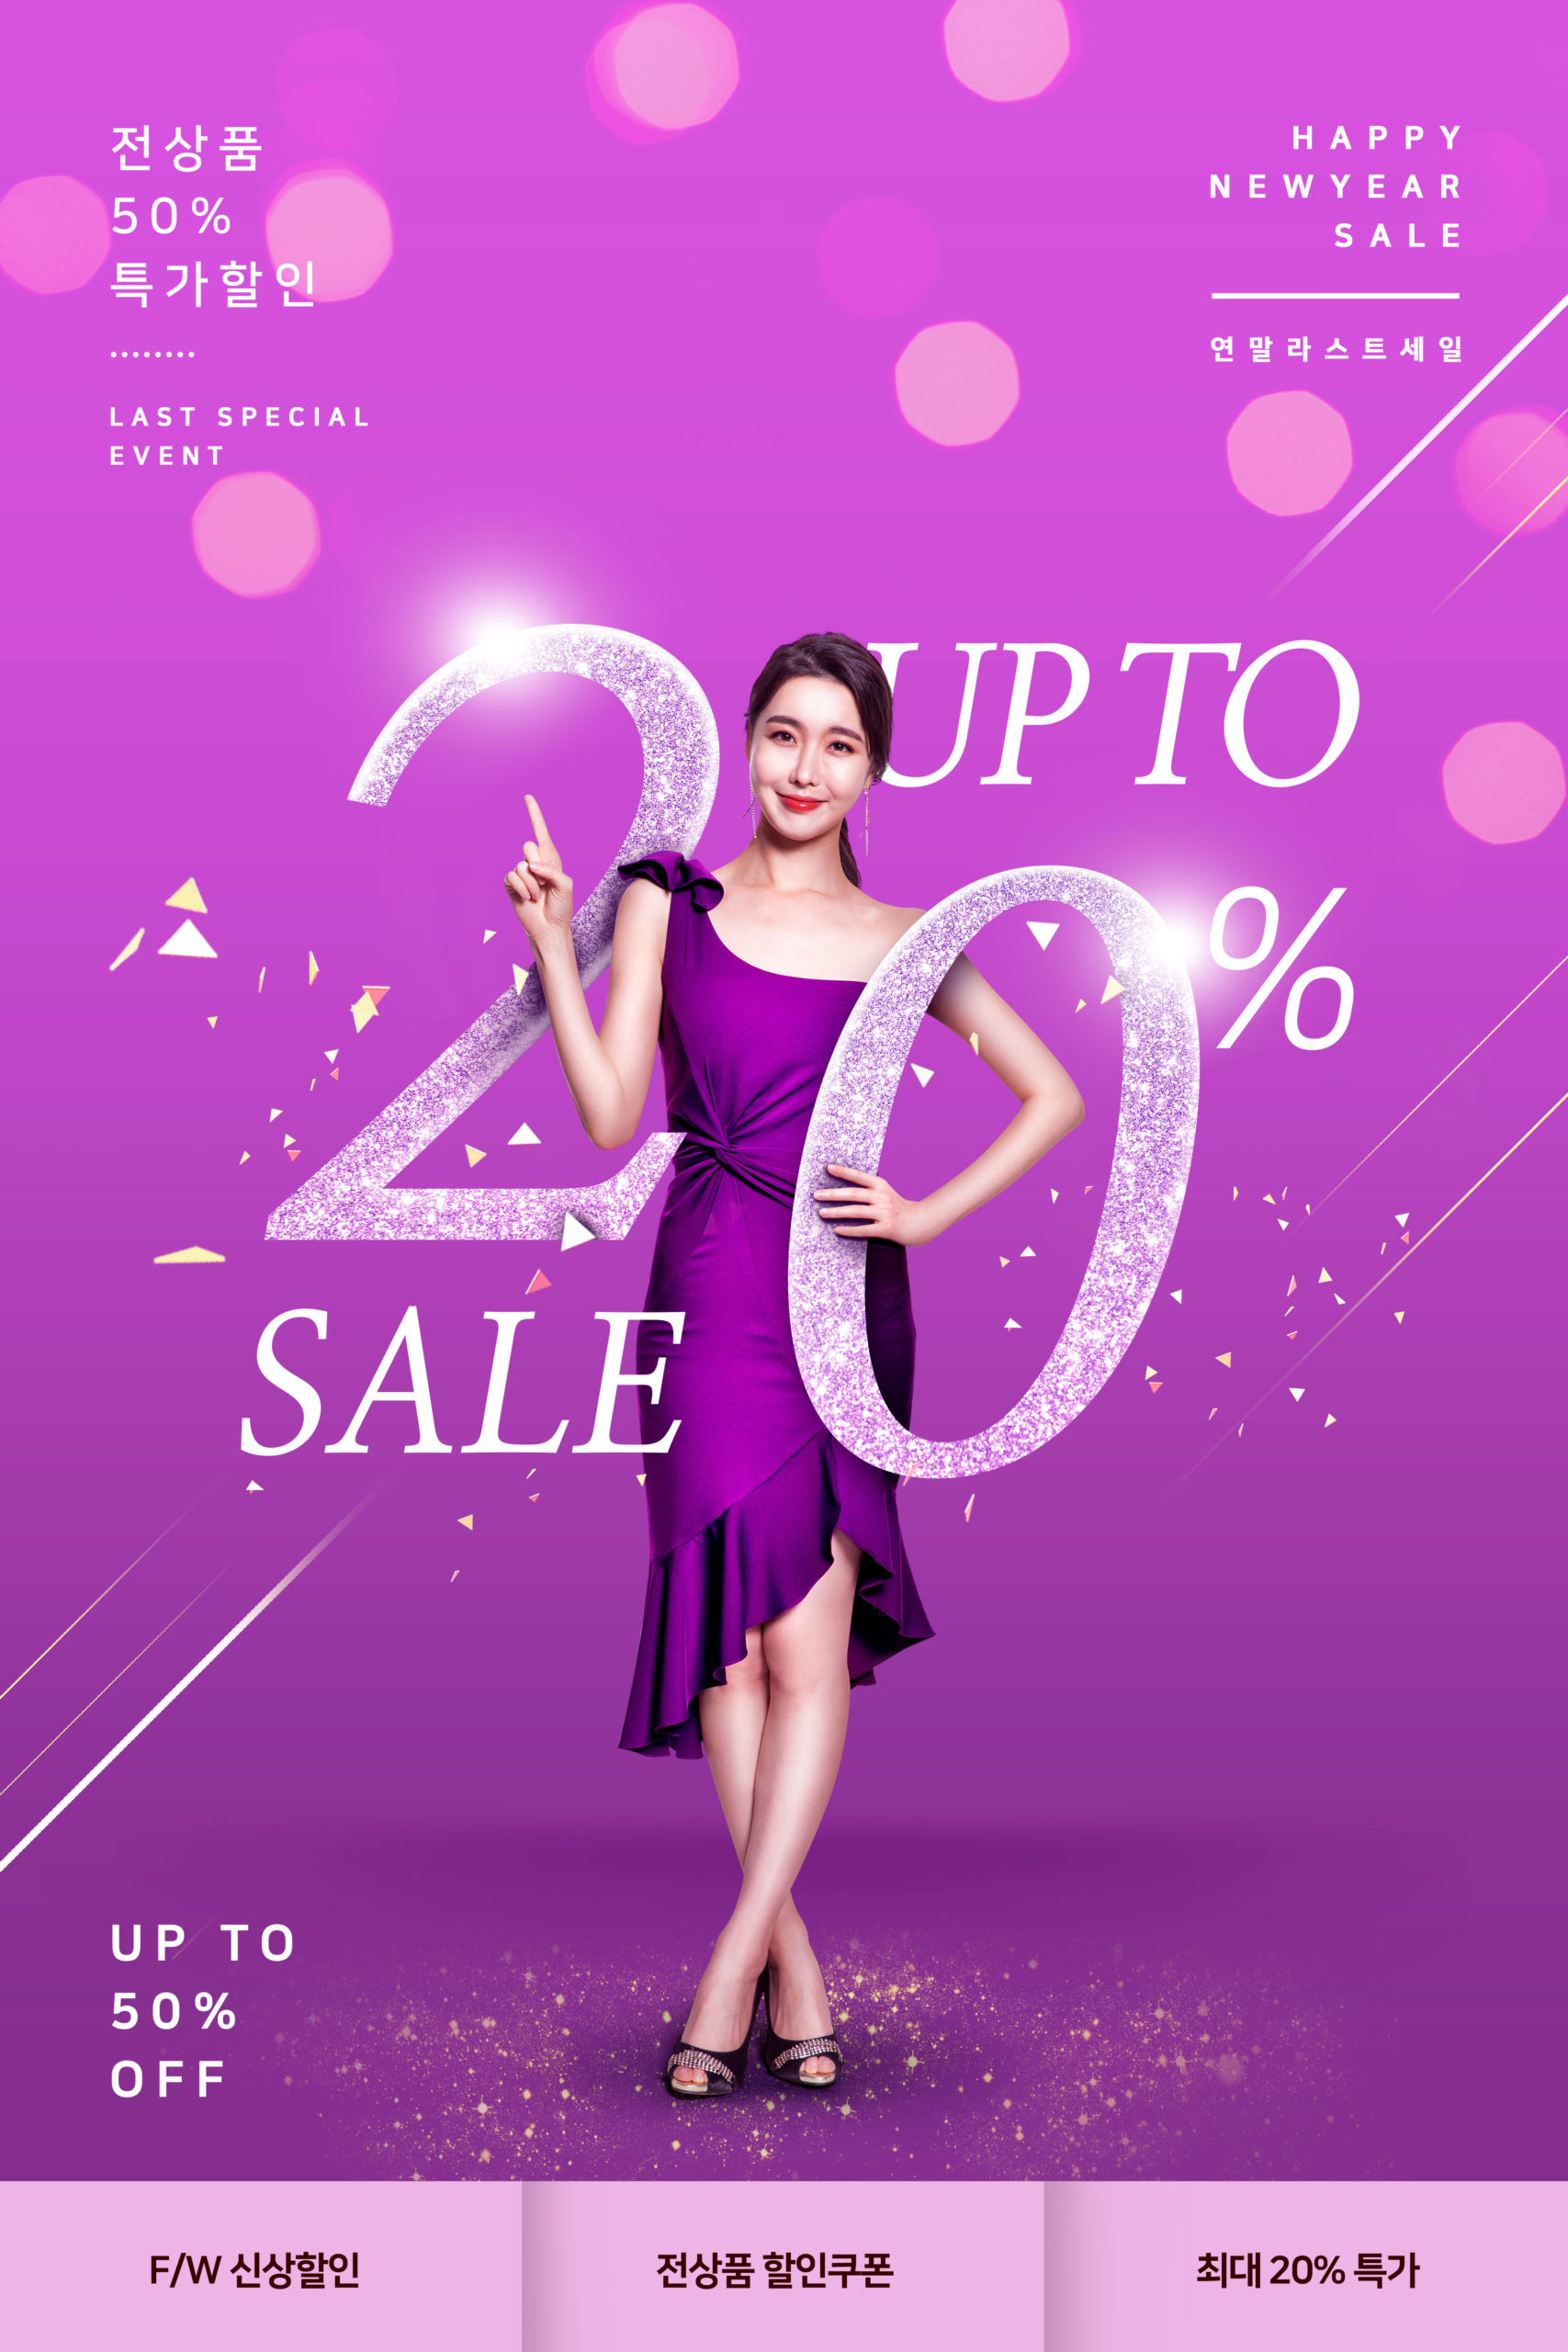 紫色主题新年折扣促销购物活动推广海报PSD素材第一素材精选模板插图